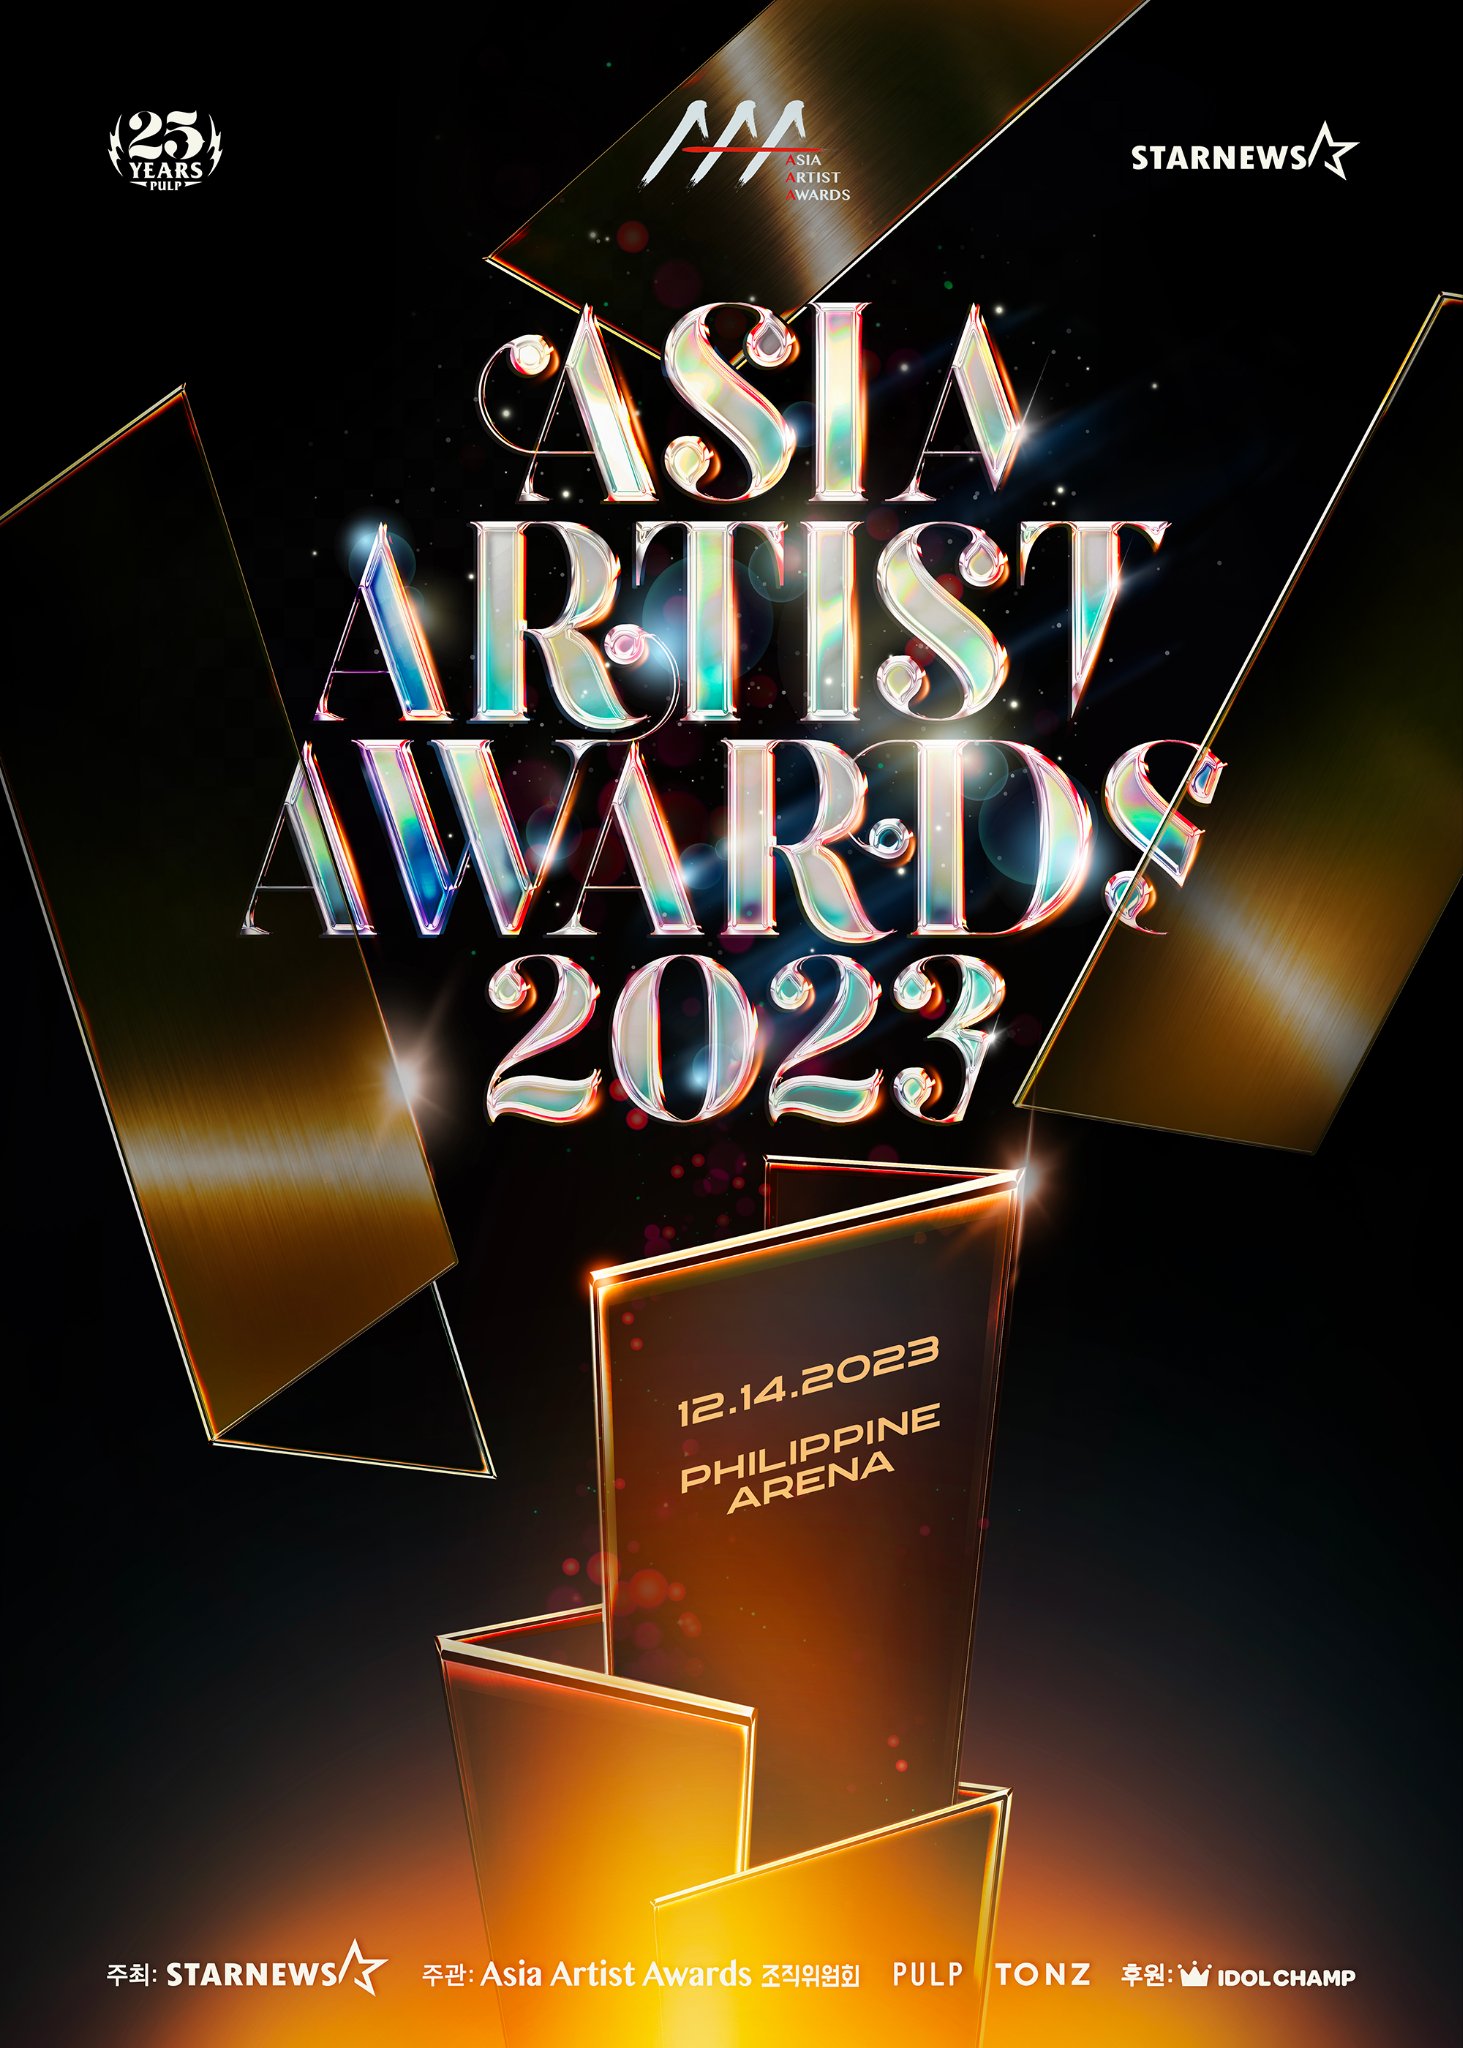 NewJeans Memborong Banyak Penghargaan, Daftar Pemenang Asia Artist Awards 2023